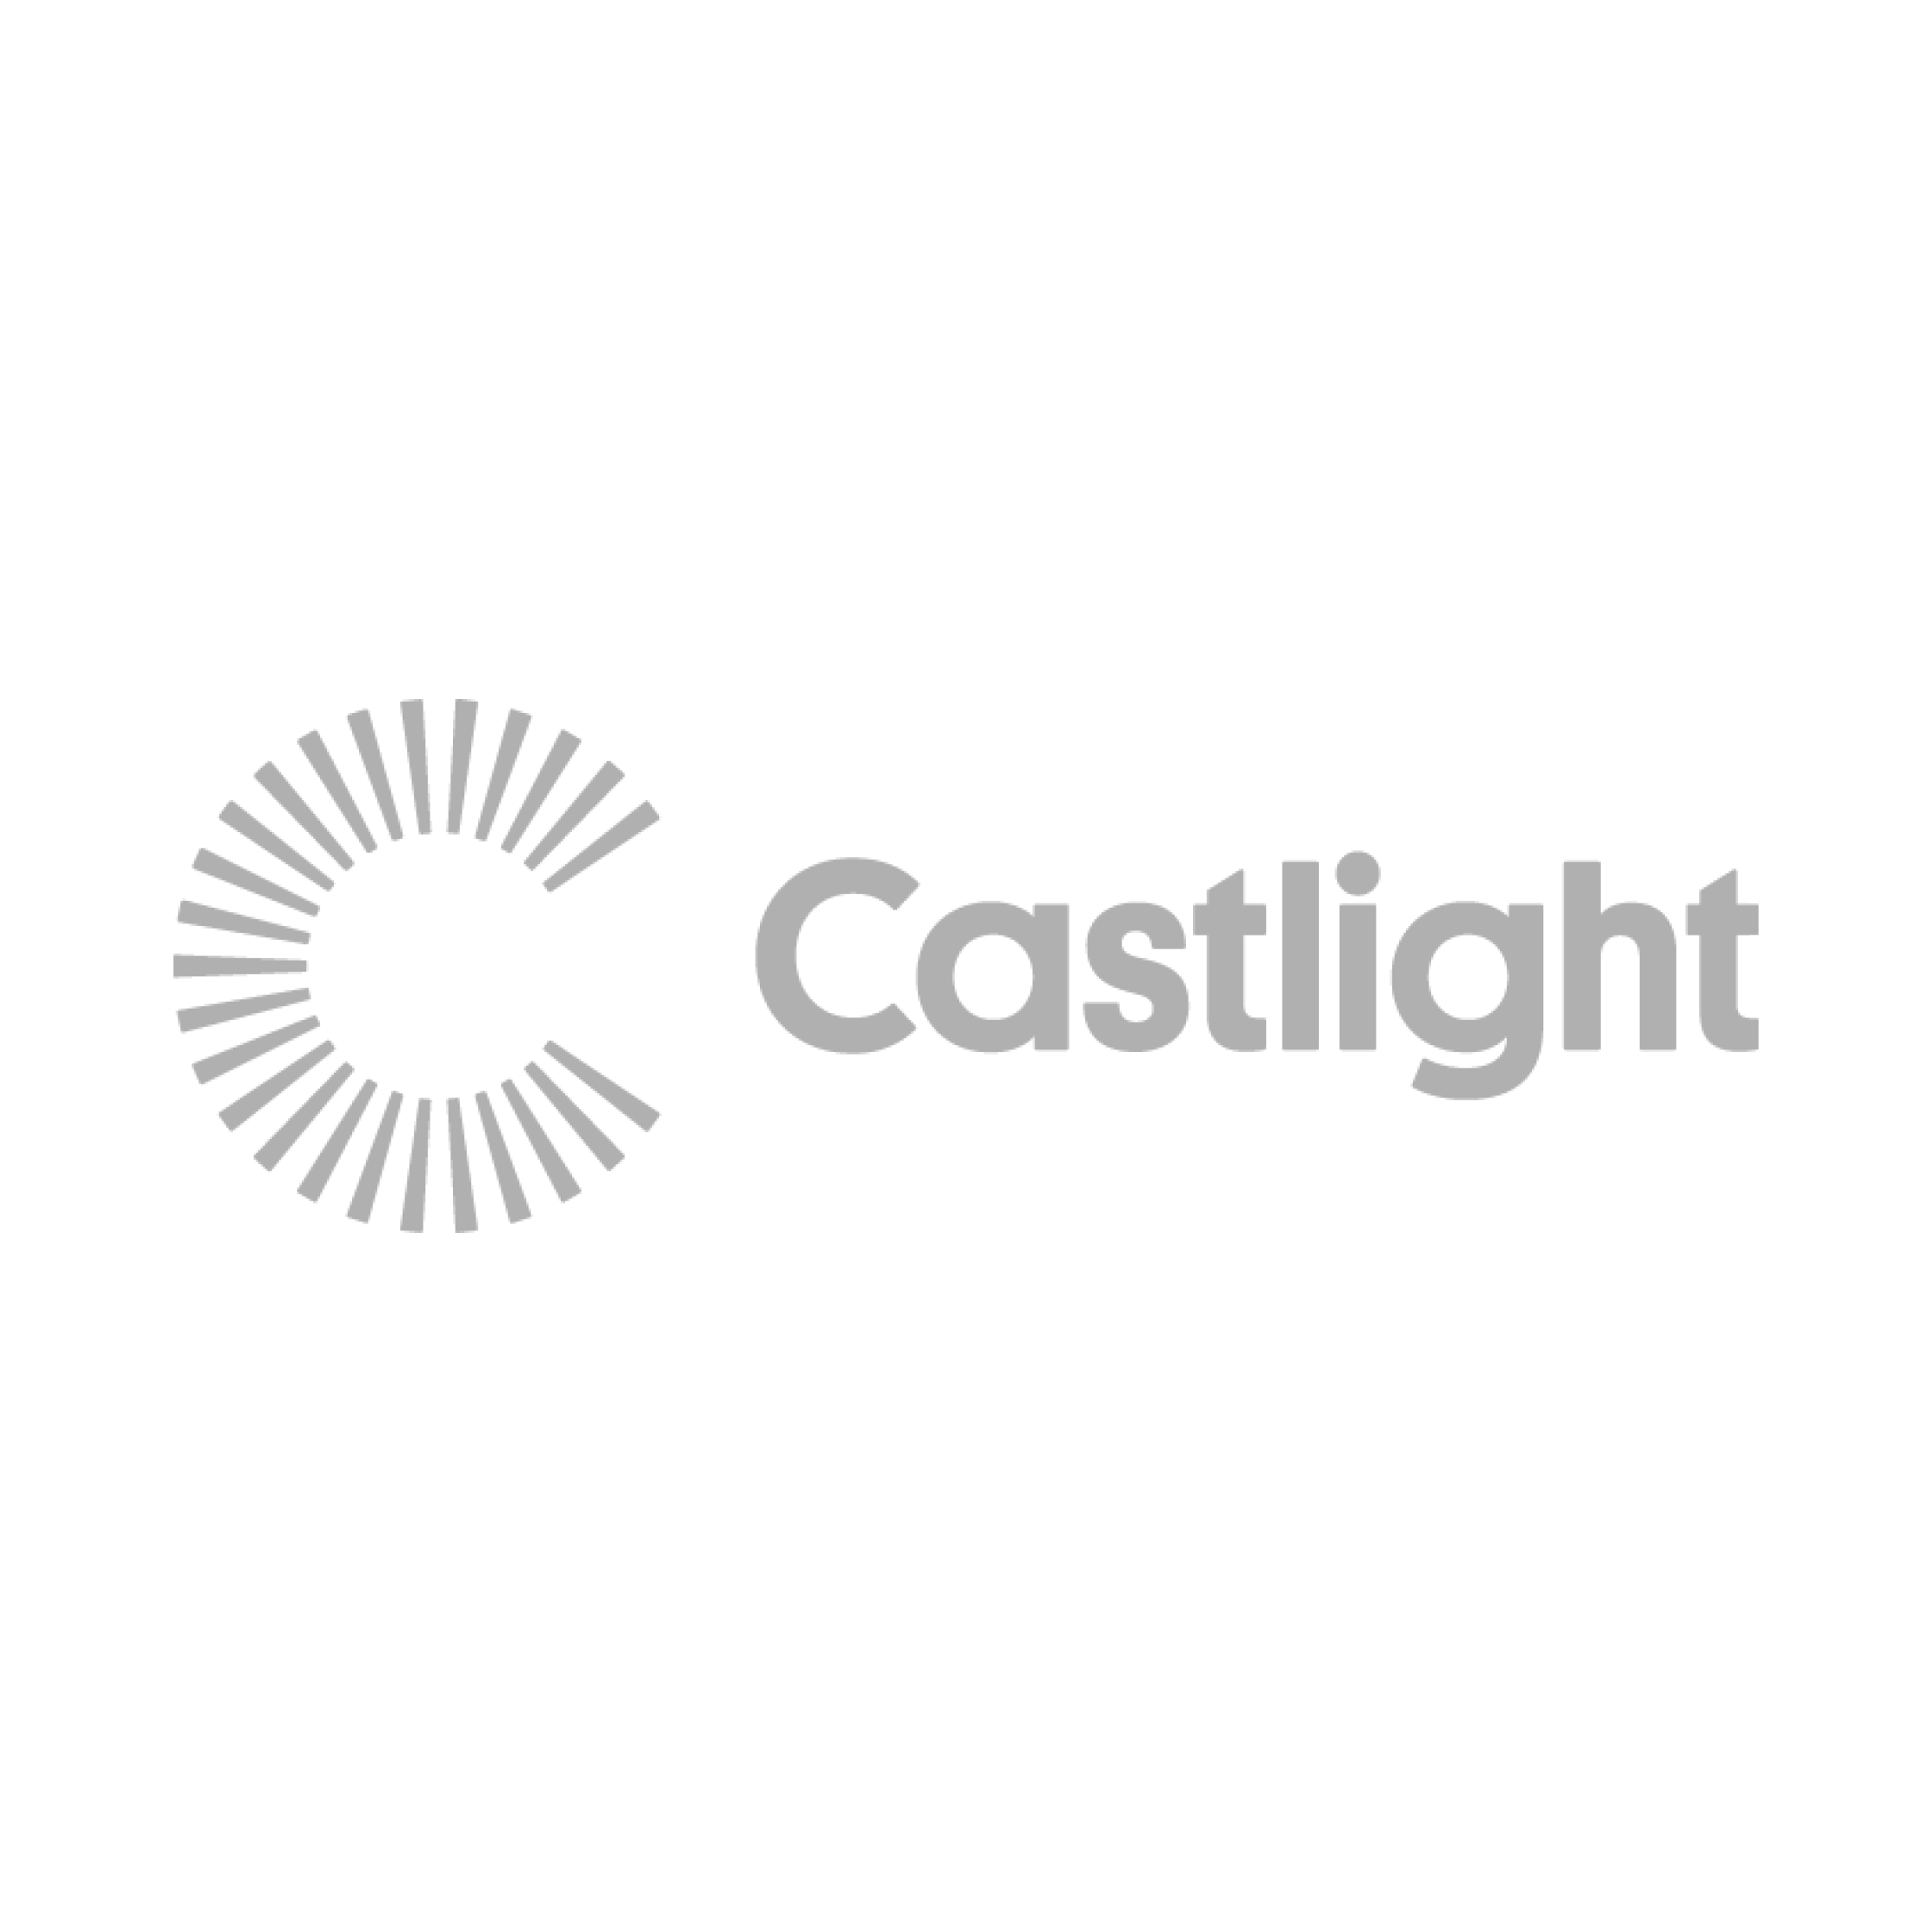 Evolution_Castlight_Logo.png